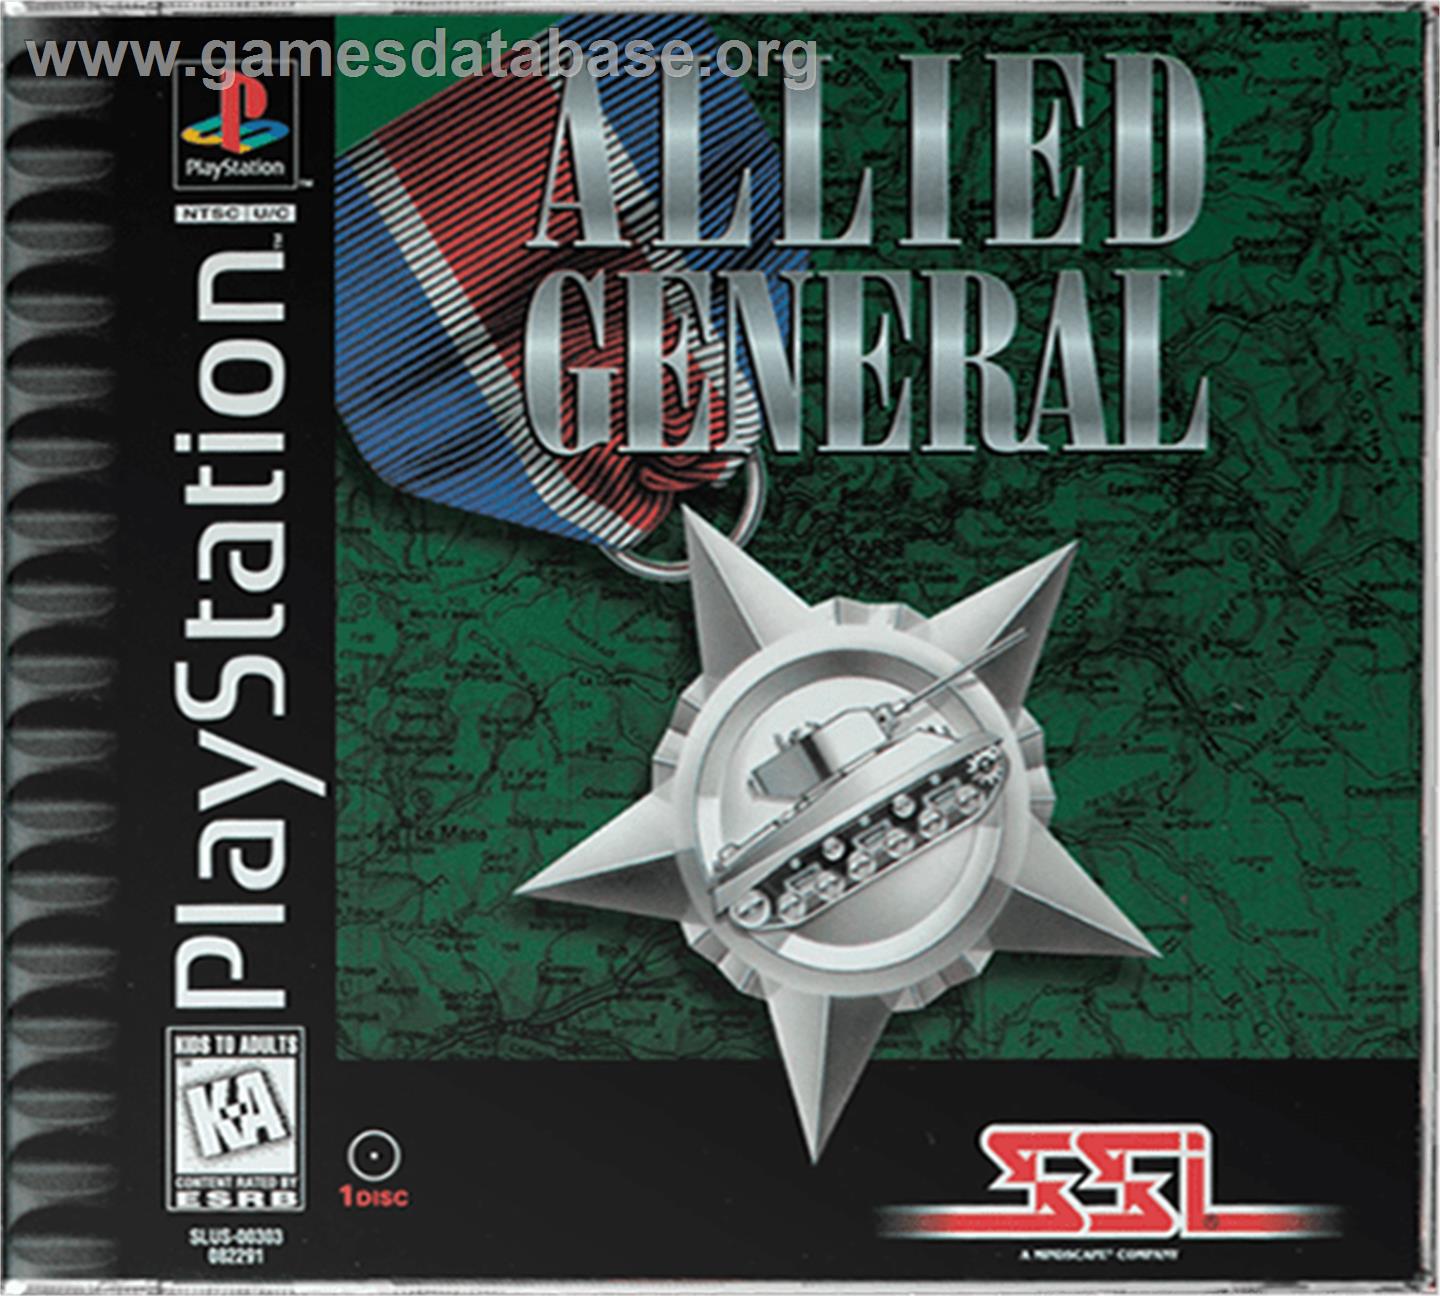 Allied General - Sony Playstation - Artwork - Box